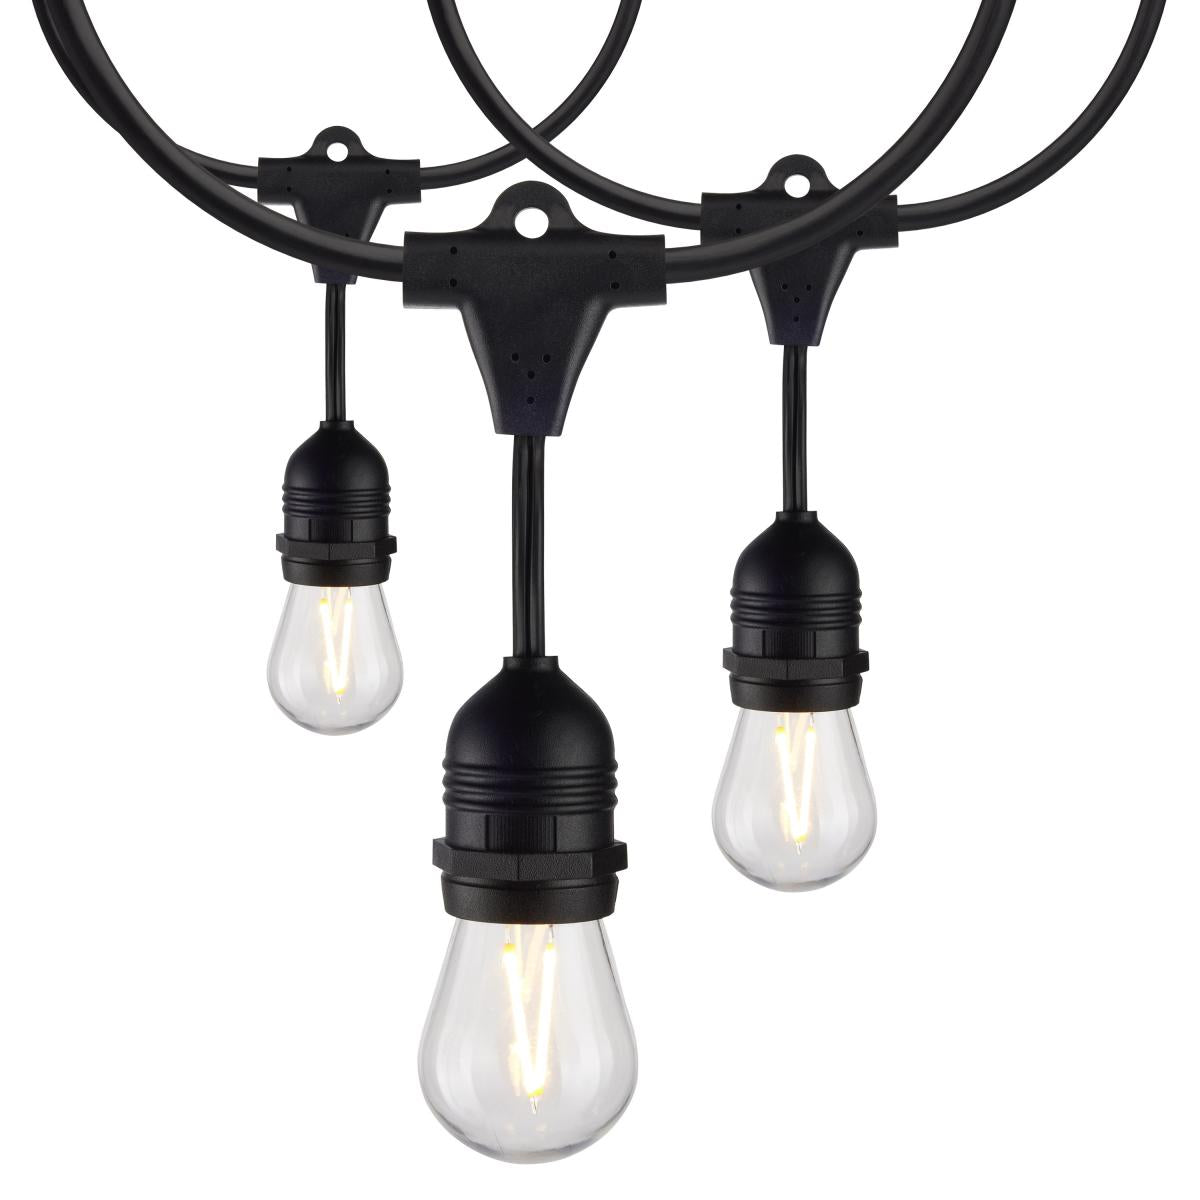 24FT LED String Light; Includes 12-S14 bulbs, 12W, 2200K, 120V